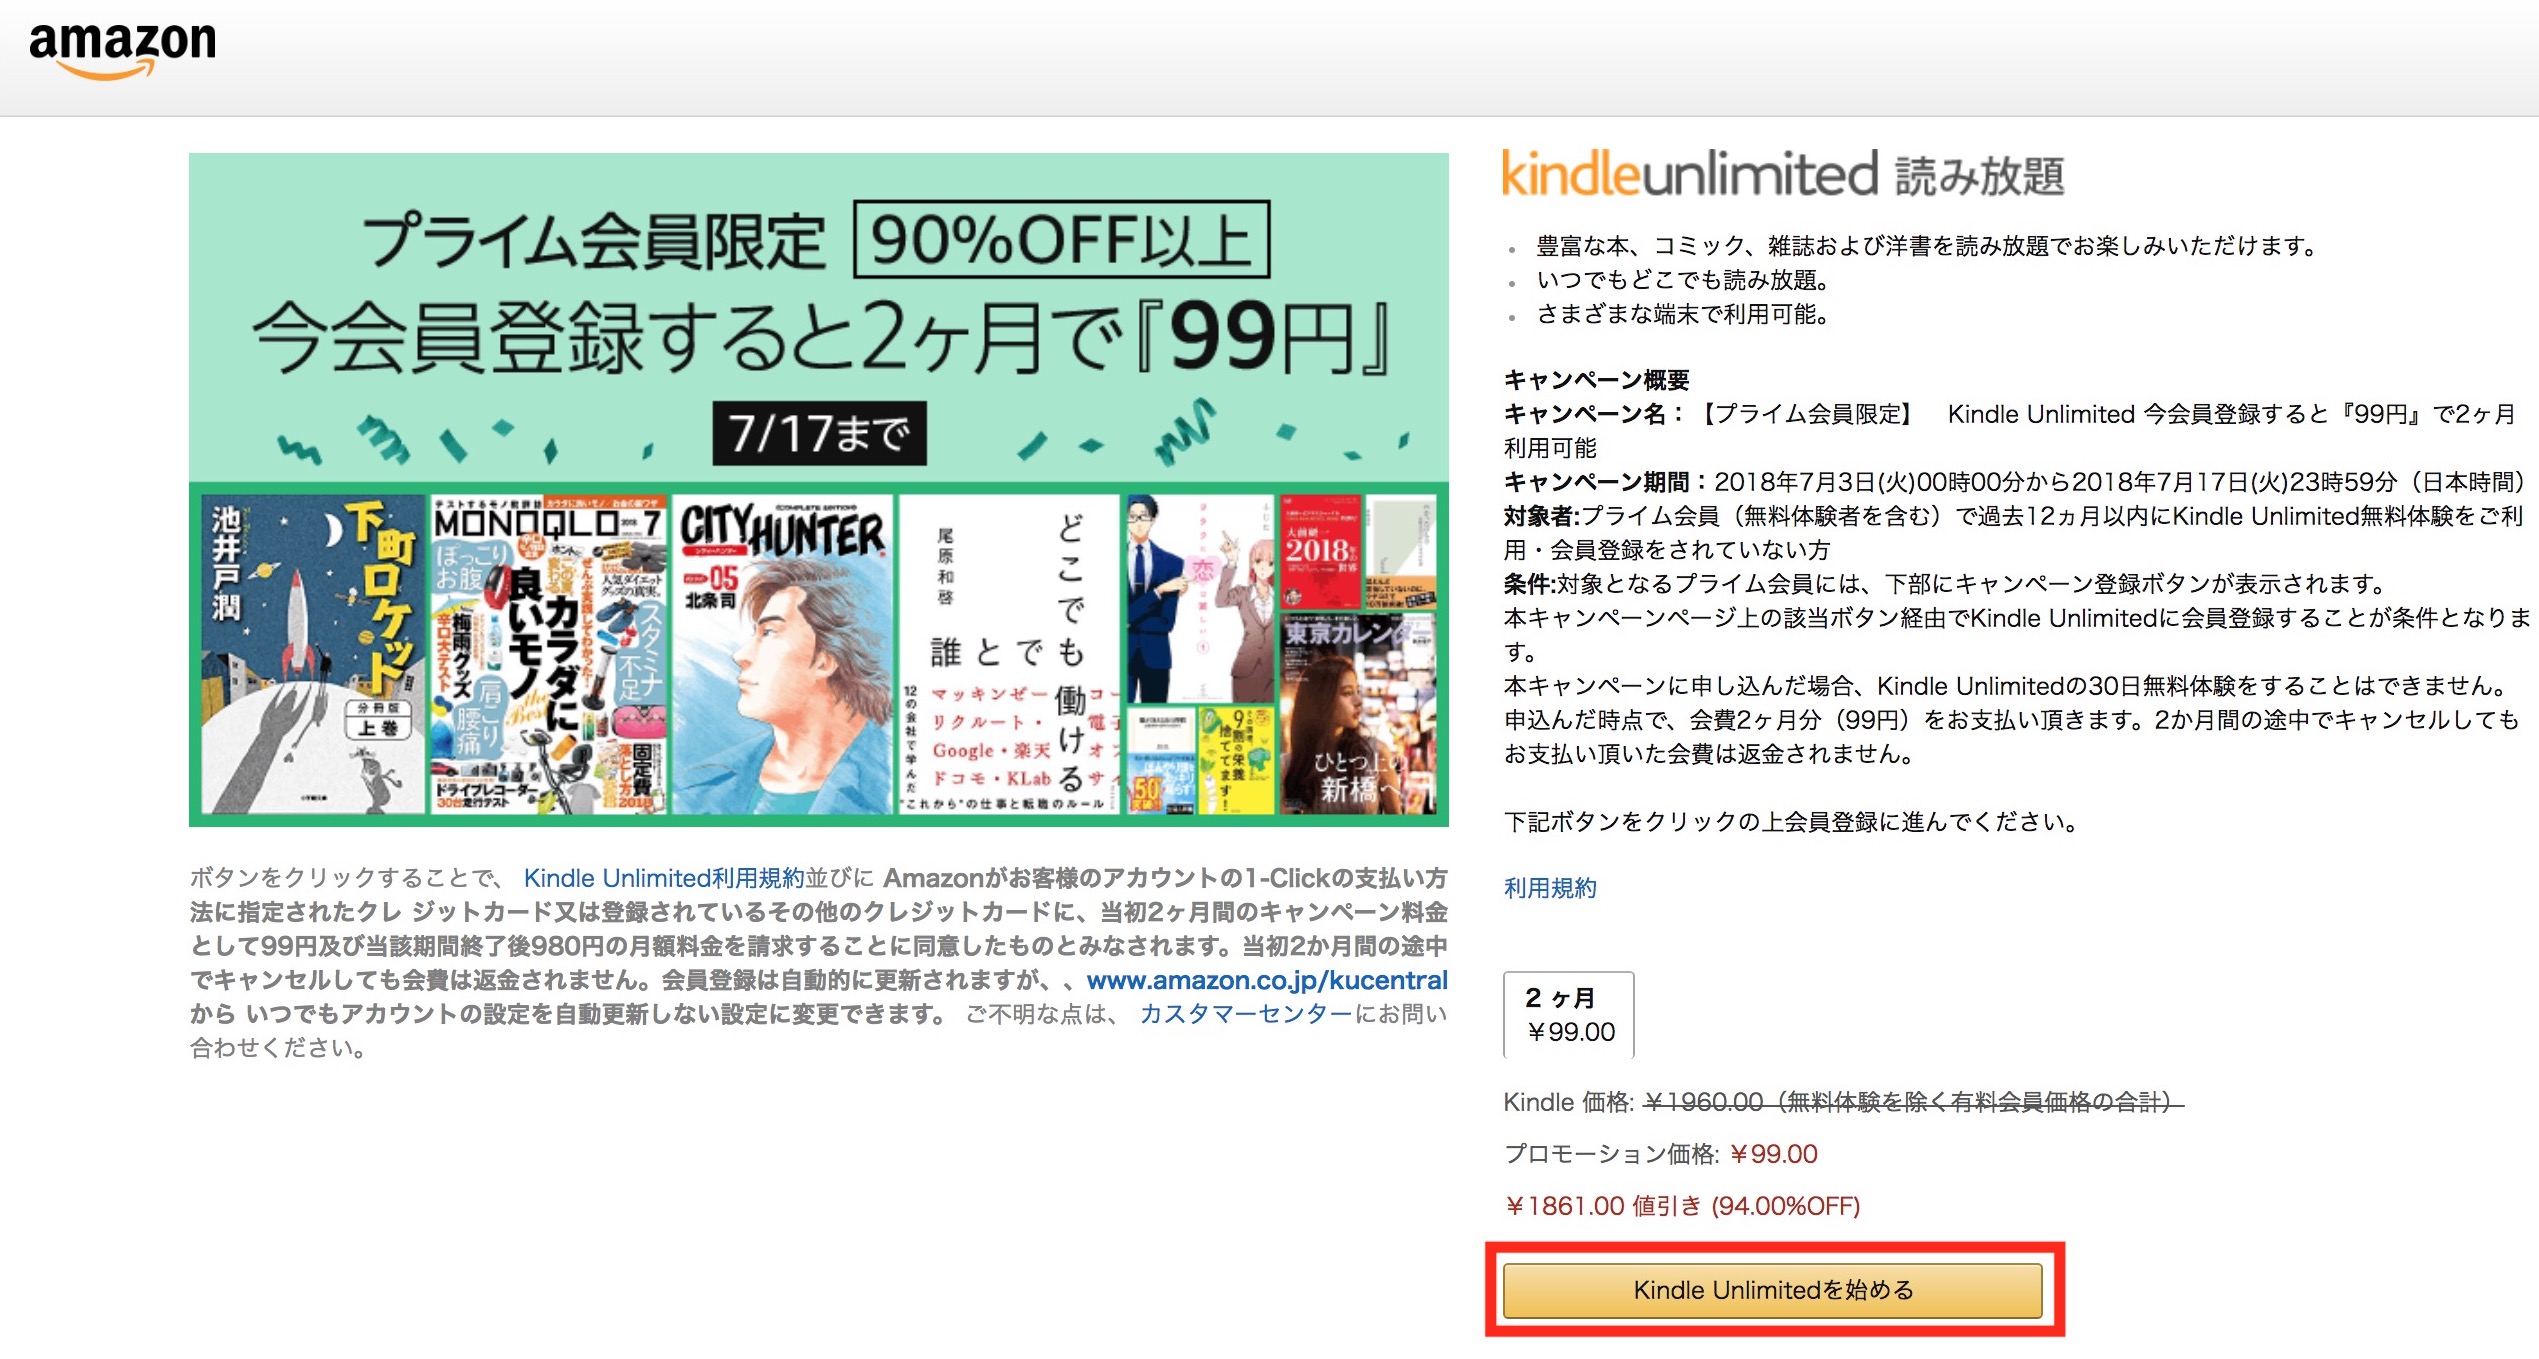 2ヶ月99円、電子書籍読み放題の「Kindle Unlimited」がキャンペーン中